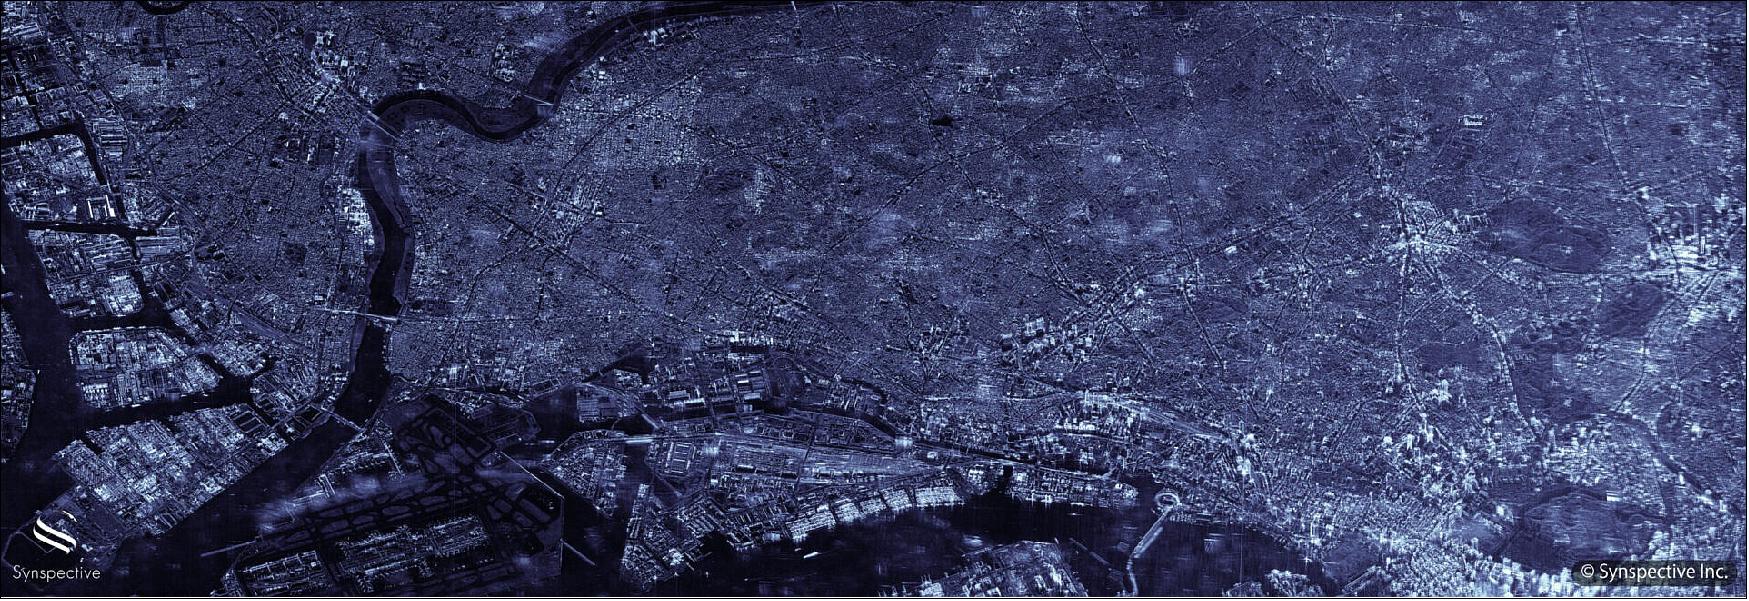 Figure 12: Synspective SAR Sliding Spotlight Imagery of Tokyo, Japan, captured in April 2021 (image credit: Synspective)